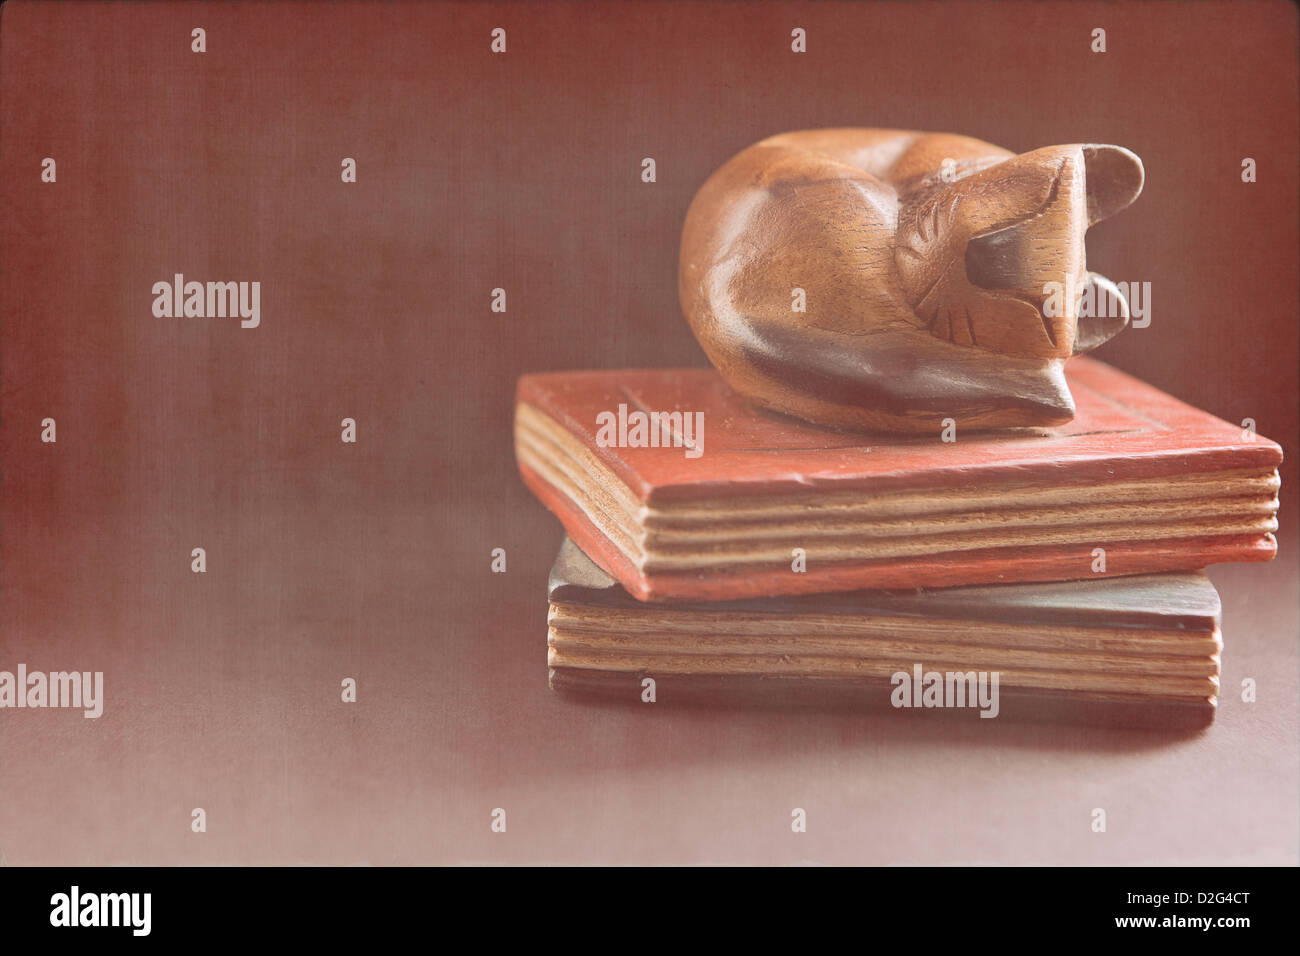 La vie toujours l'image d'un chat dormant sur haut de livres. Banque D'Images